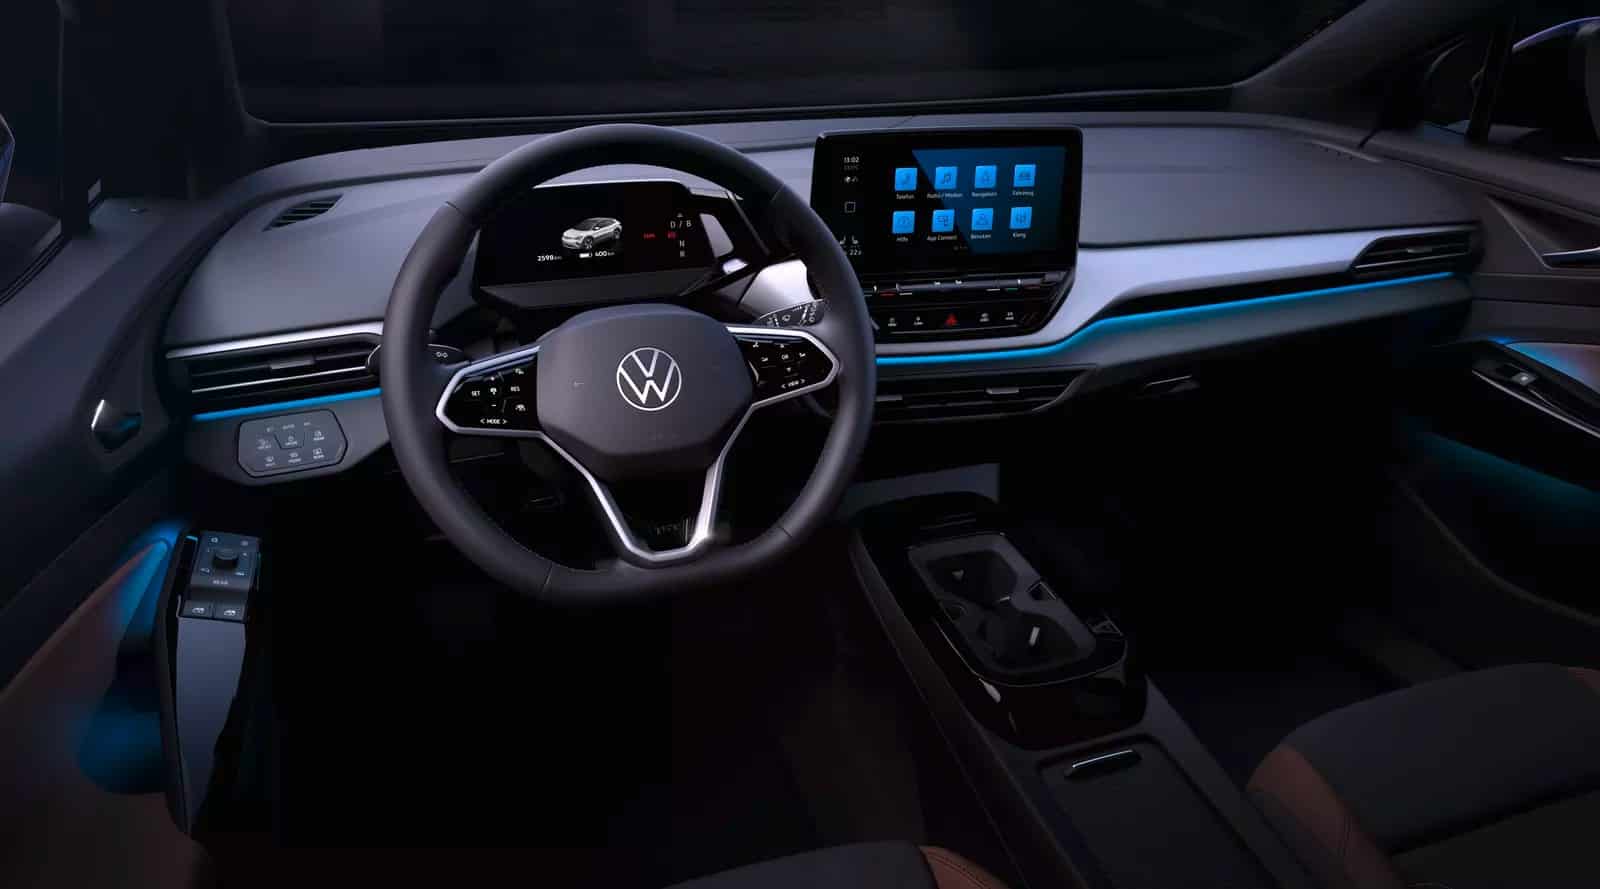 Volkswagen elektrikli SUV ID 4'ün iç tasarımının fotoğraflarını paylaştı [Galeri]